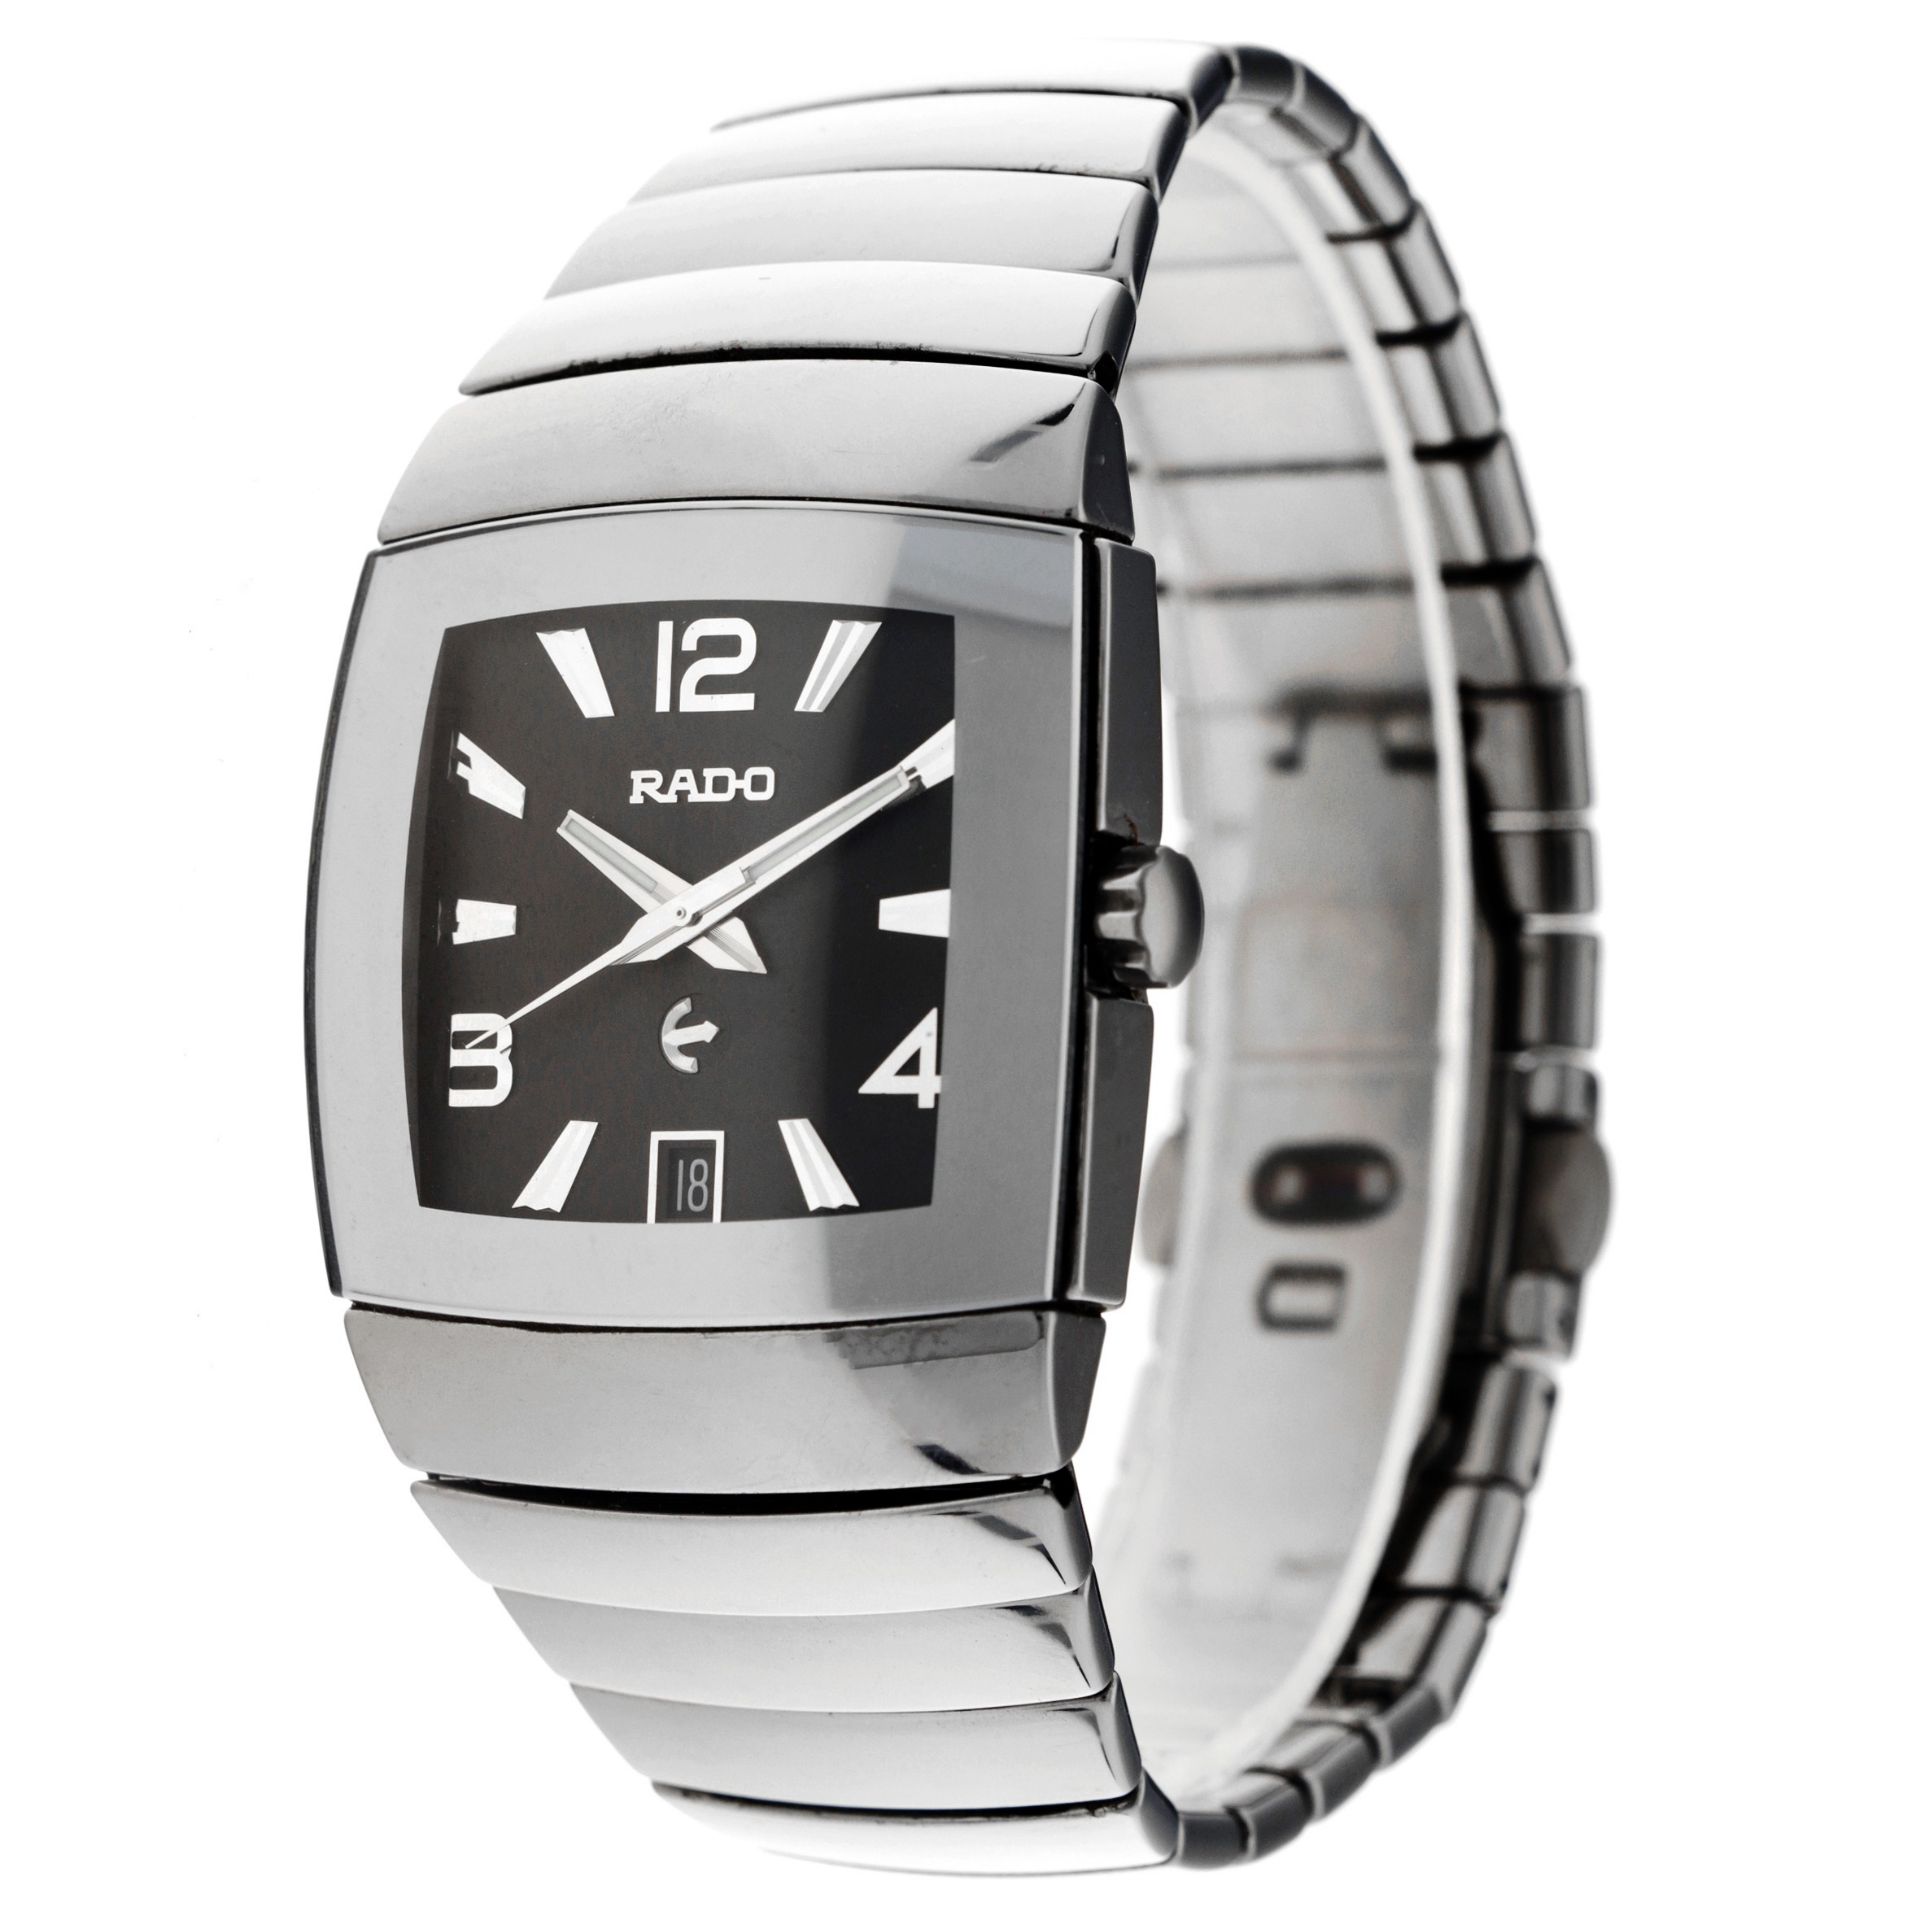 No Reserve - Rado Sintra 629.0598.3 - Men's watch. - Image 3 of 6